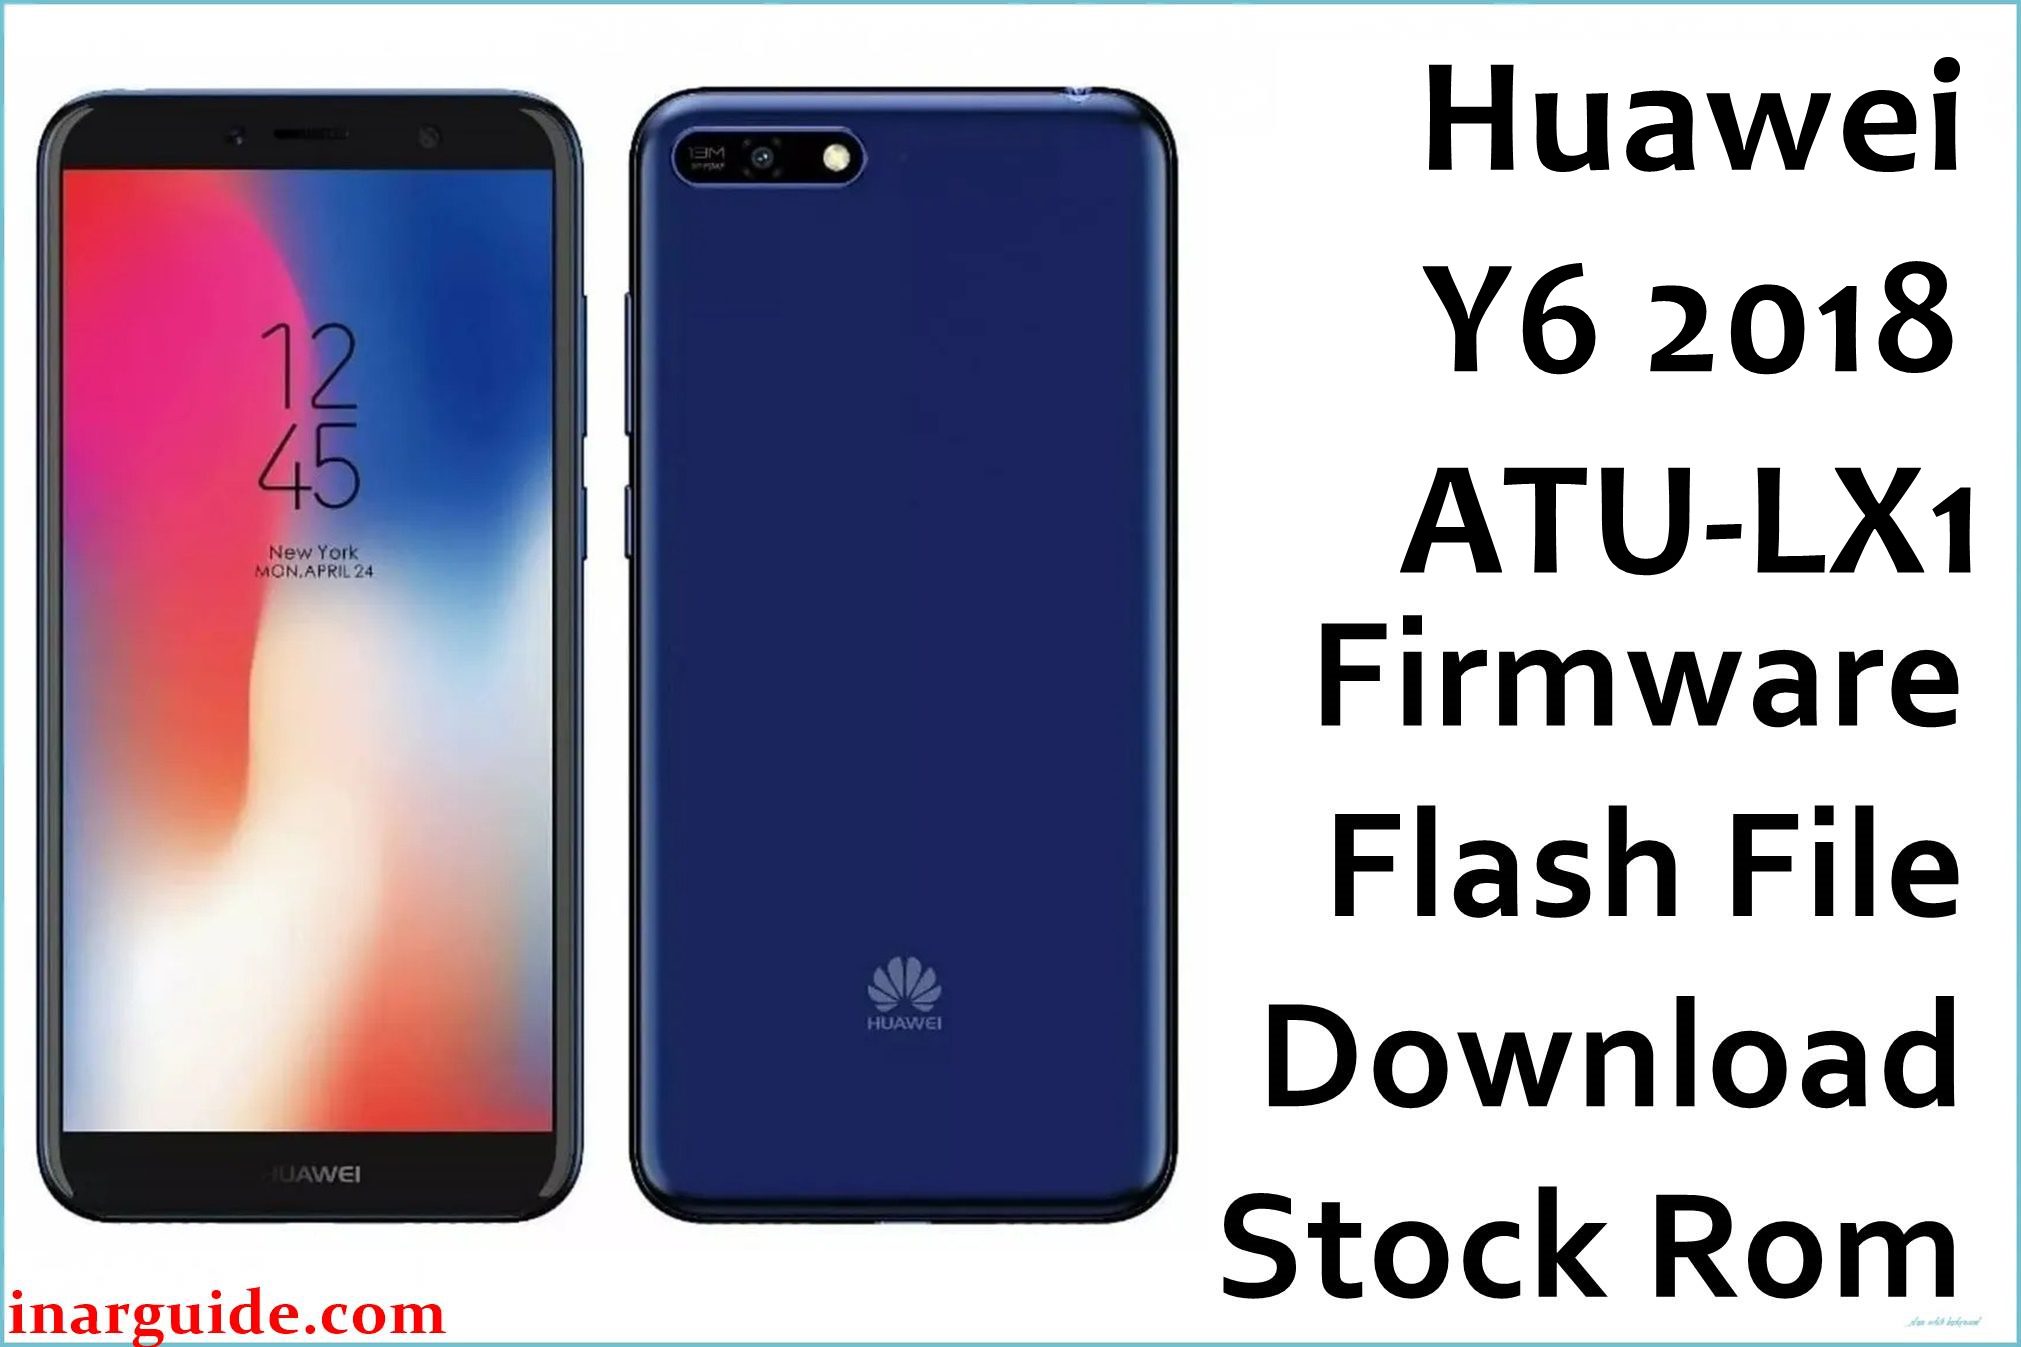 Huawei Y6 2018 ATU LX1